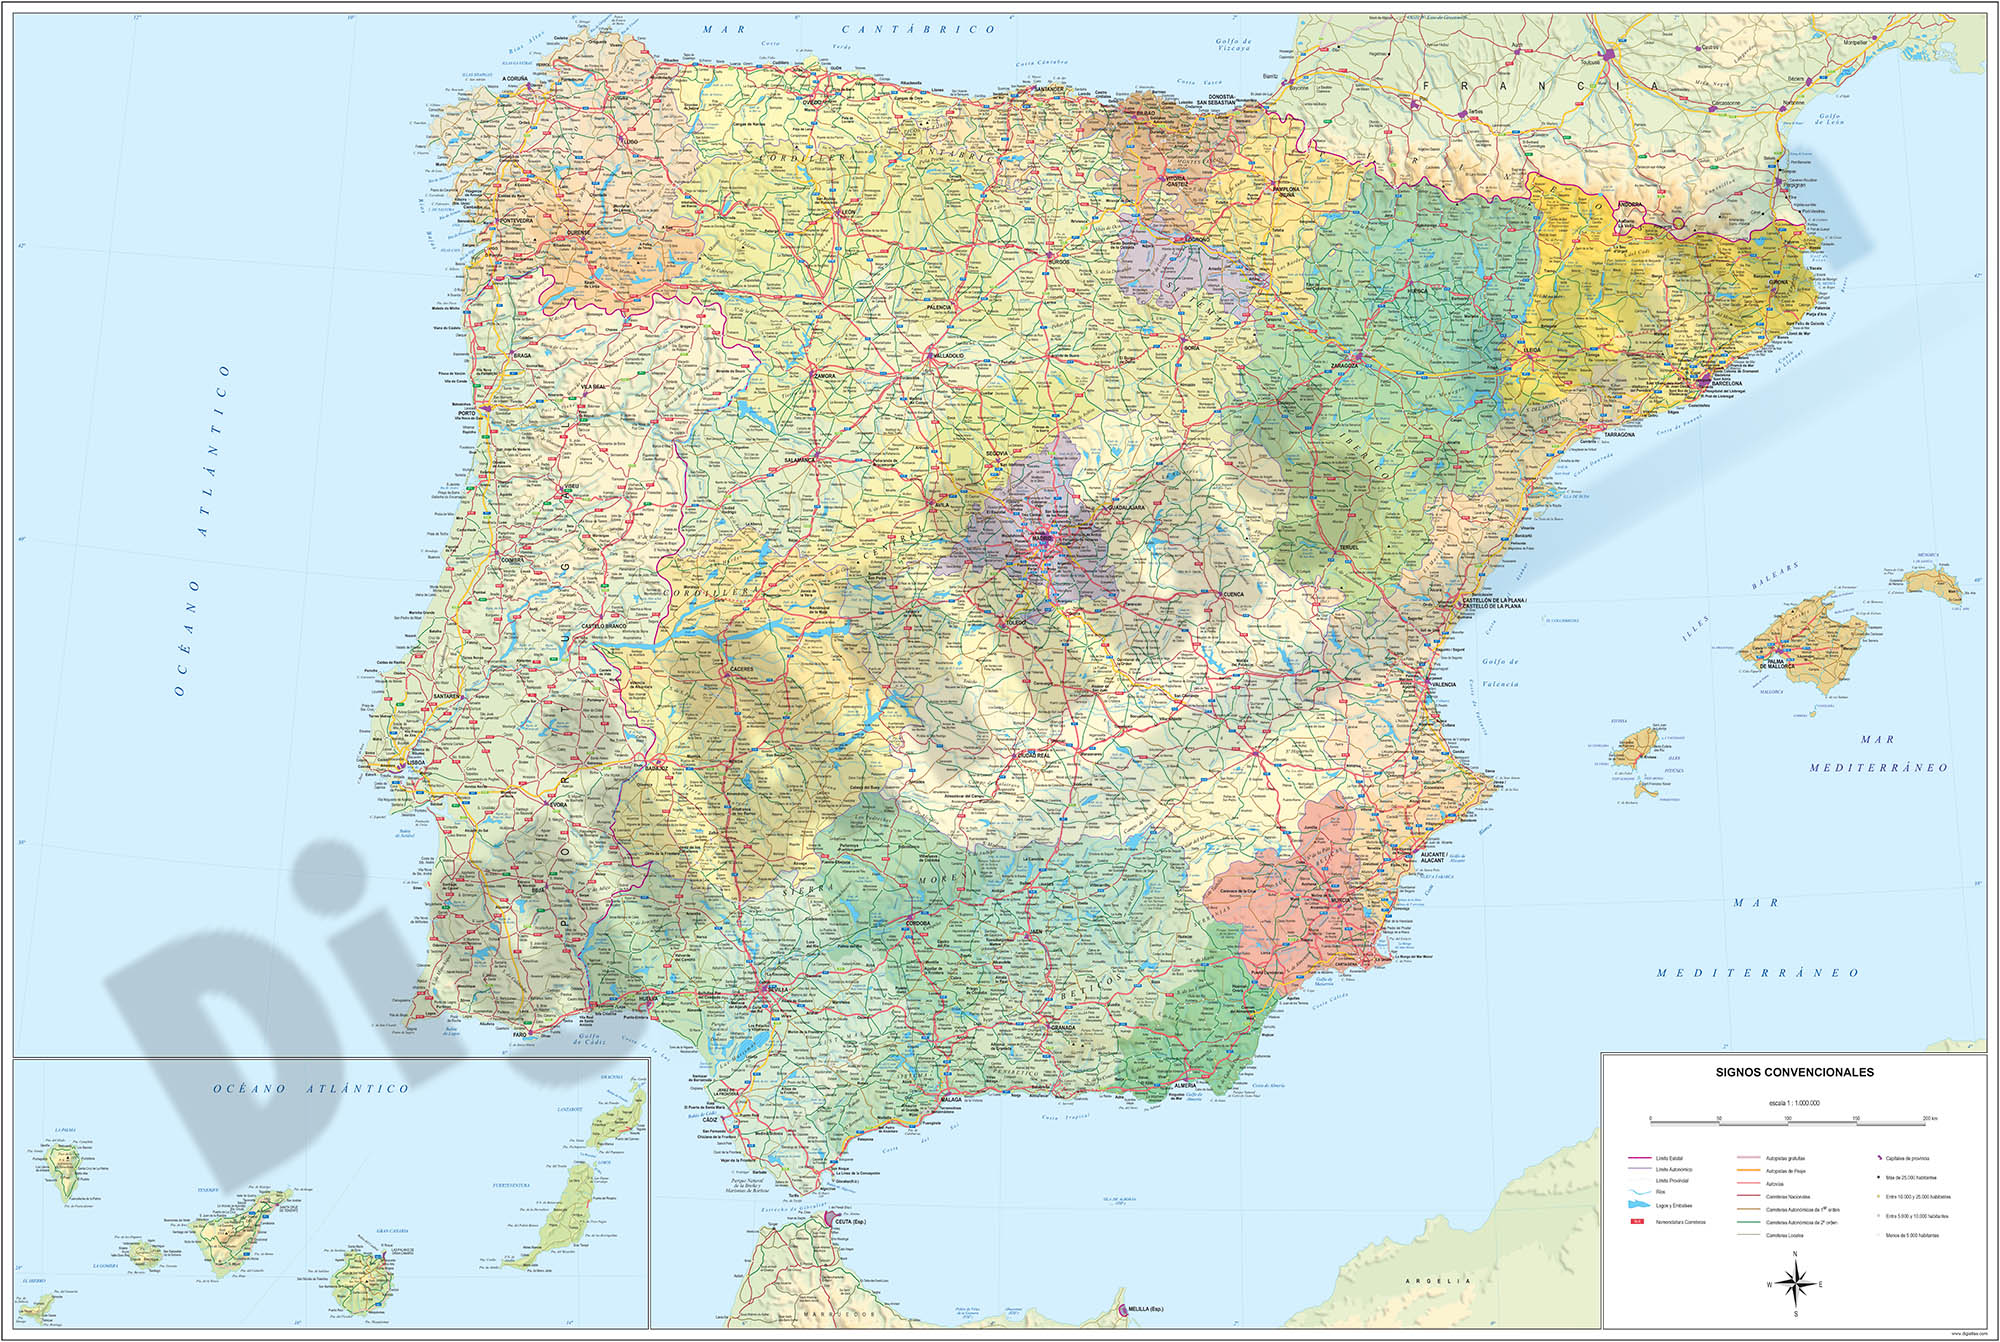      Mapa de España Politico-Relieve Poster